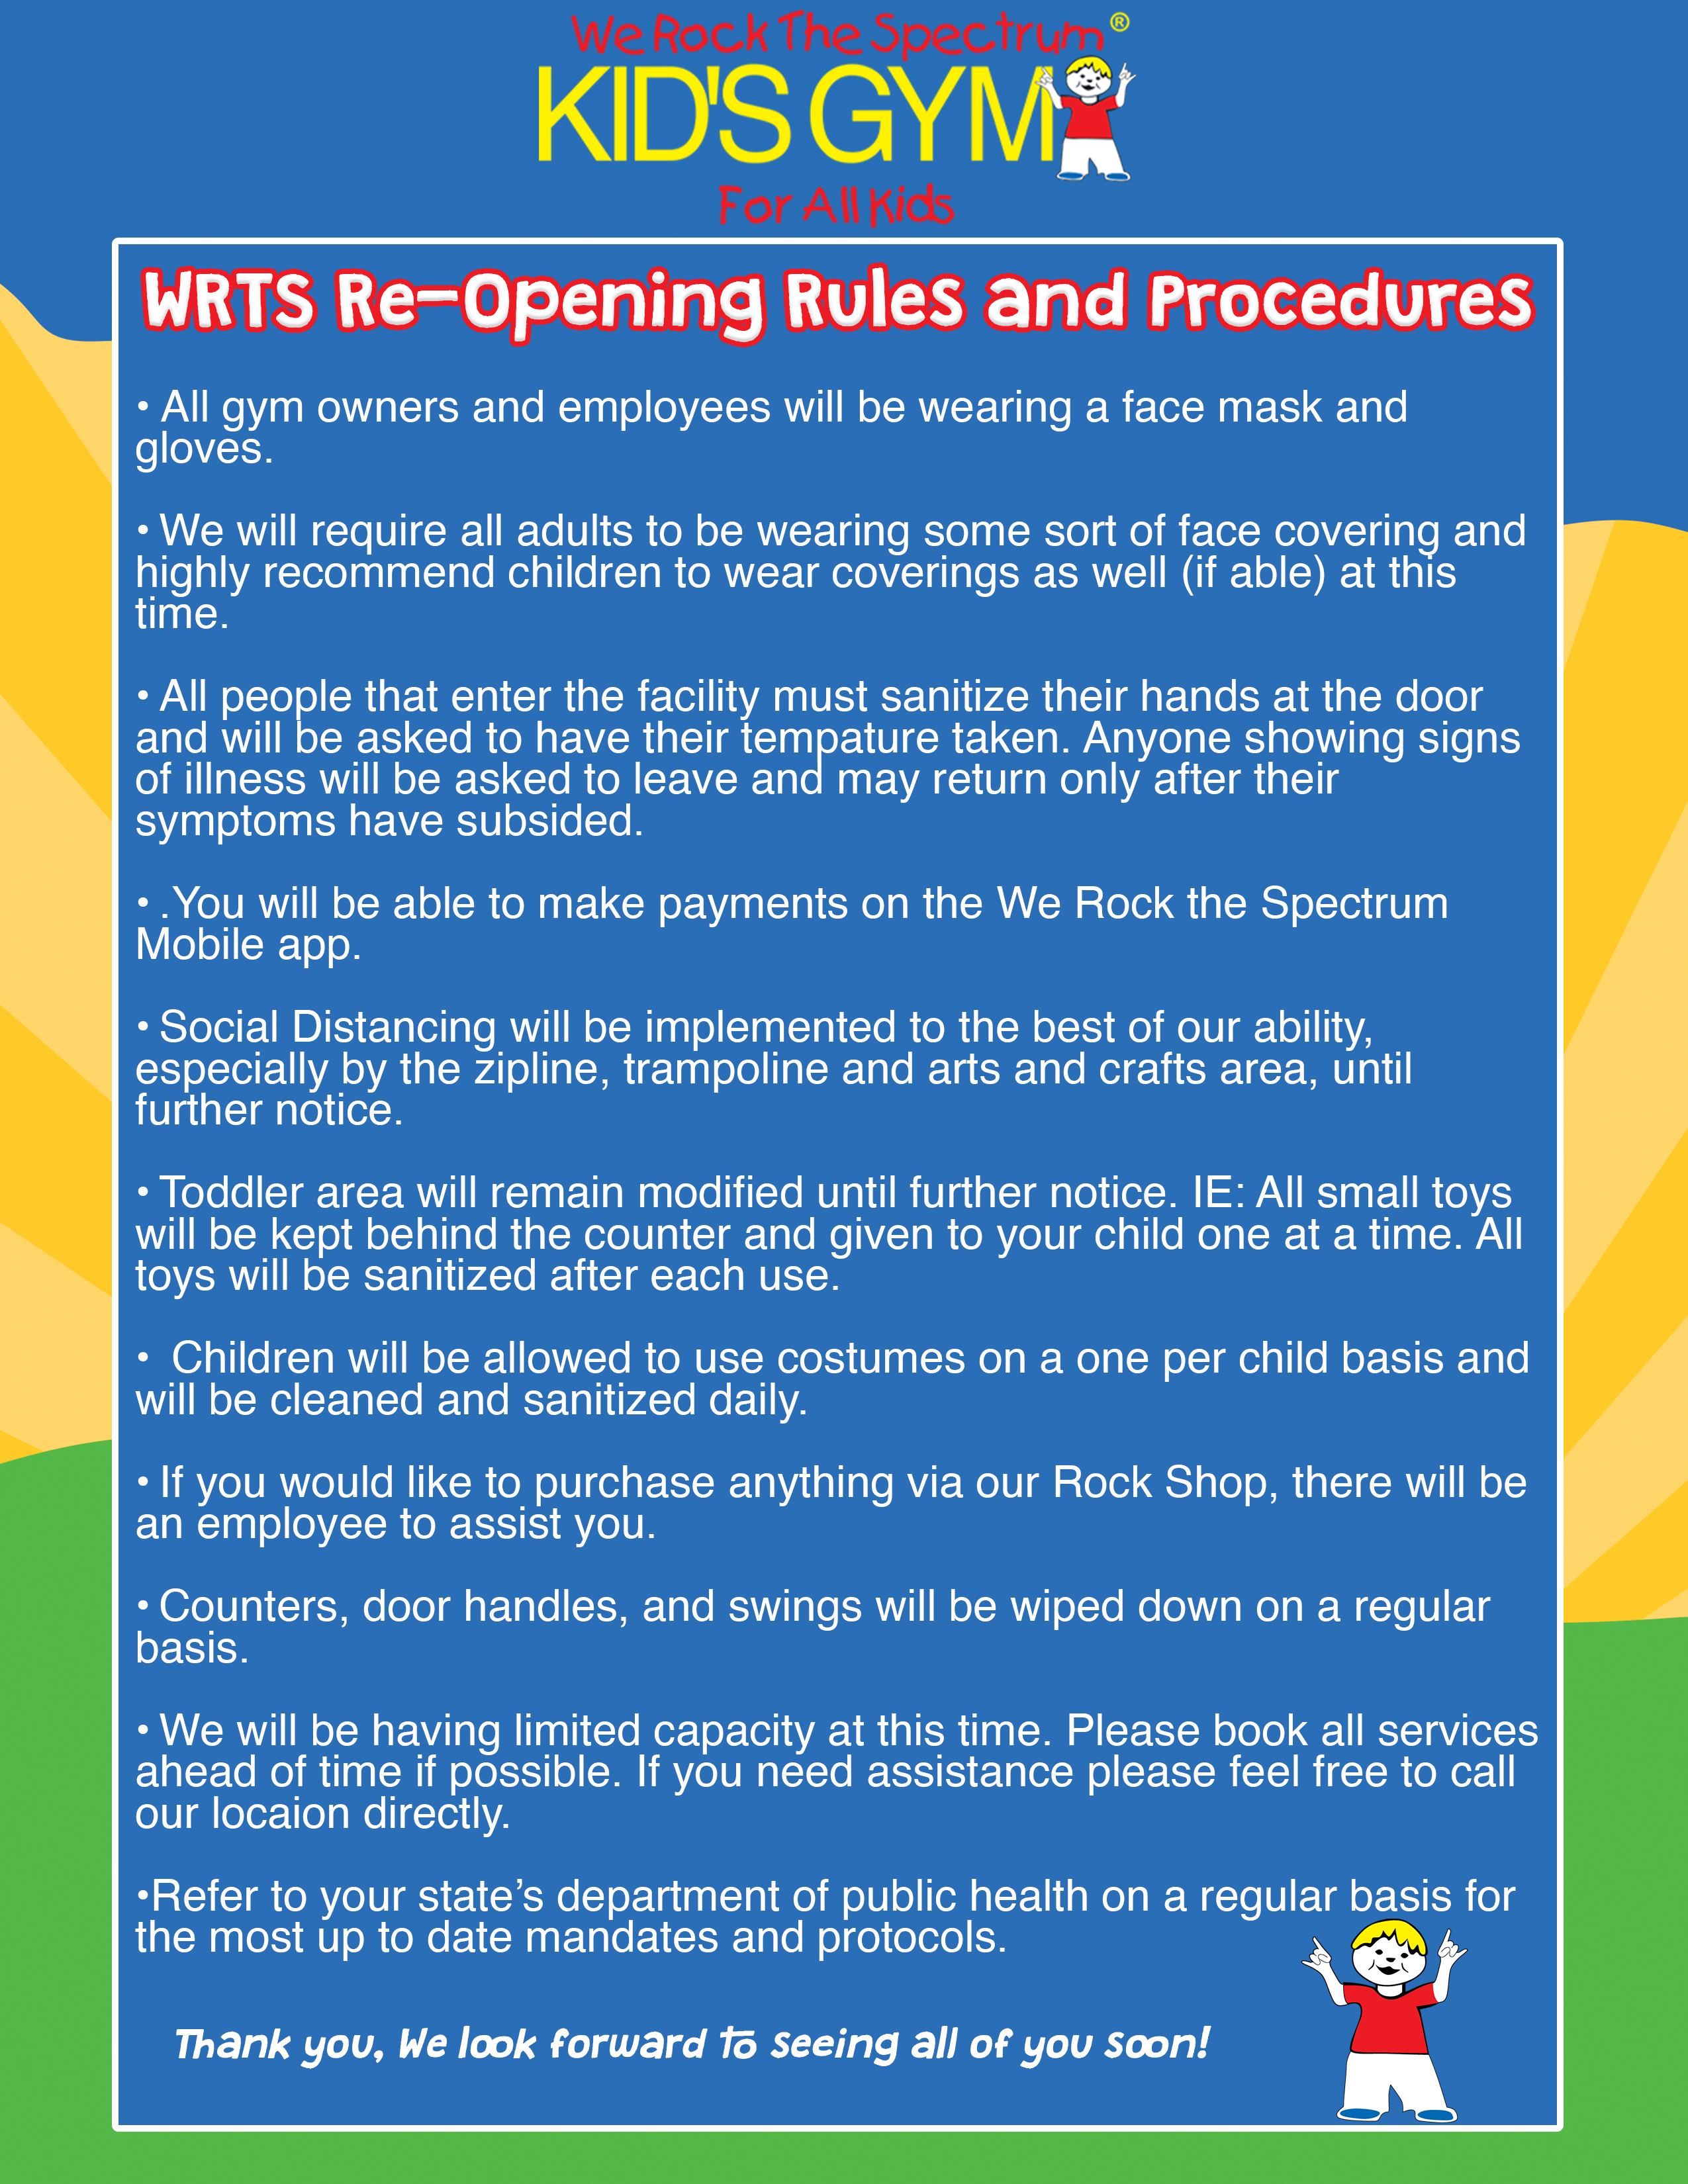 WRTS Re-Opening Procedures